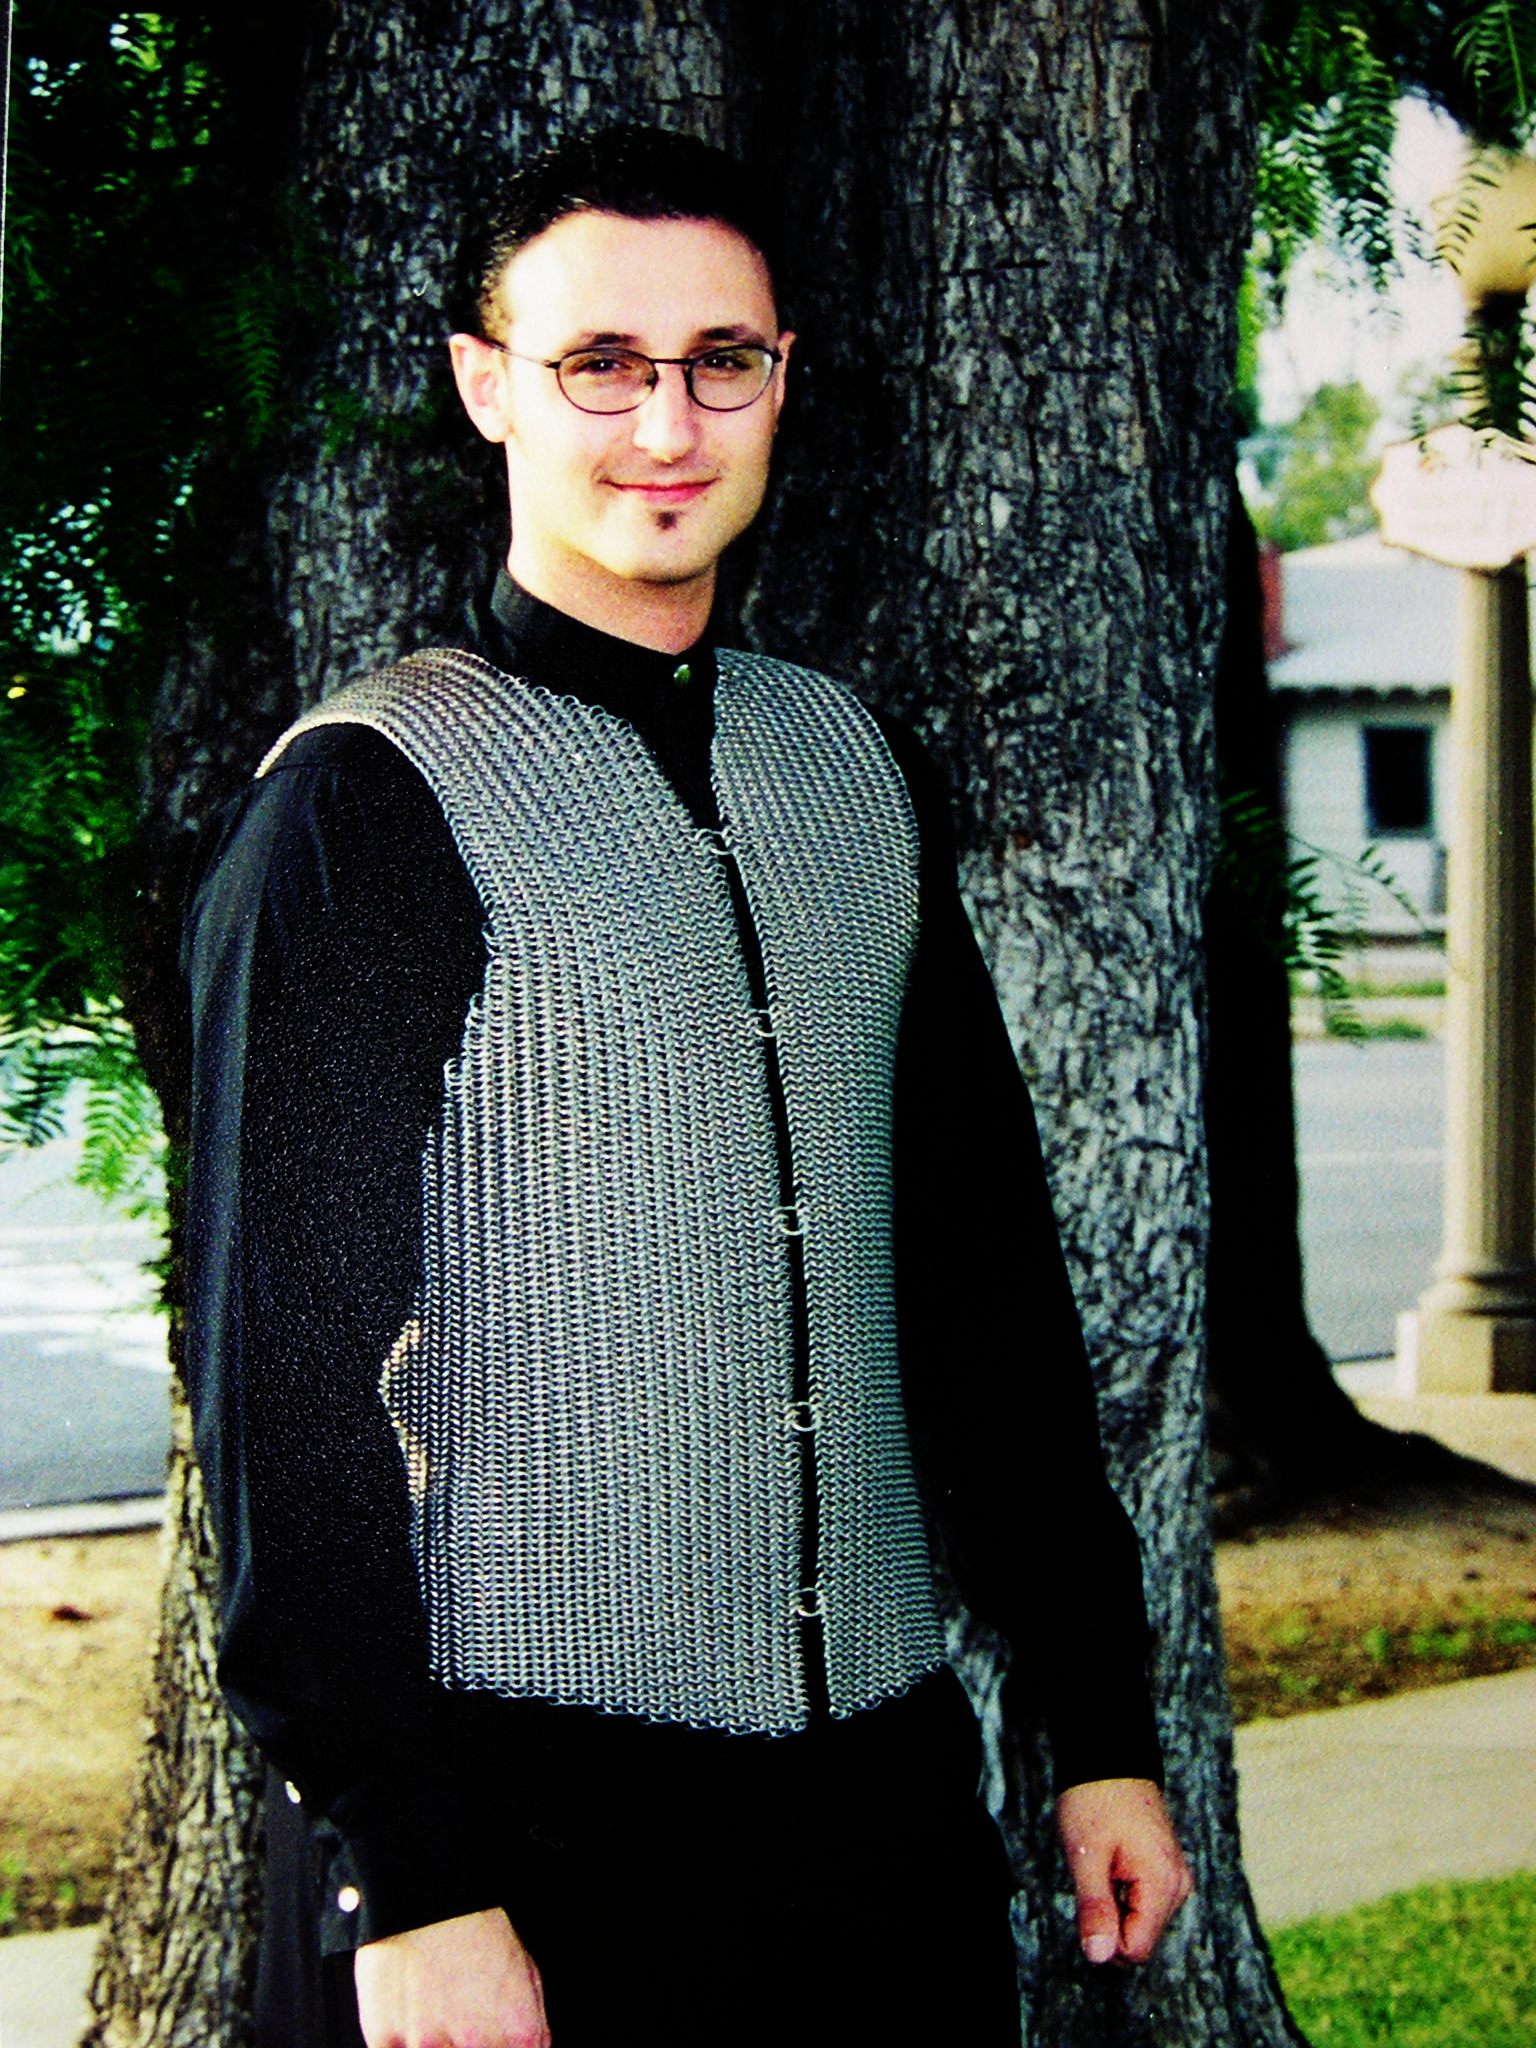 josh diliberto wearing handmade chainmaille vest